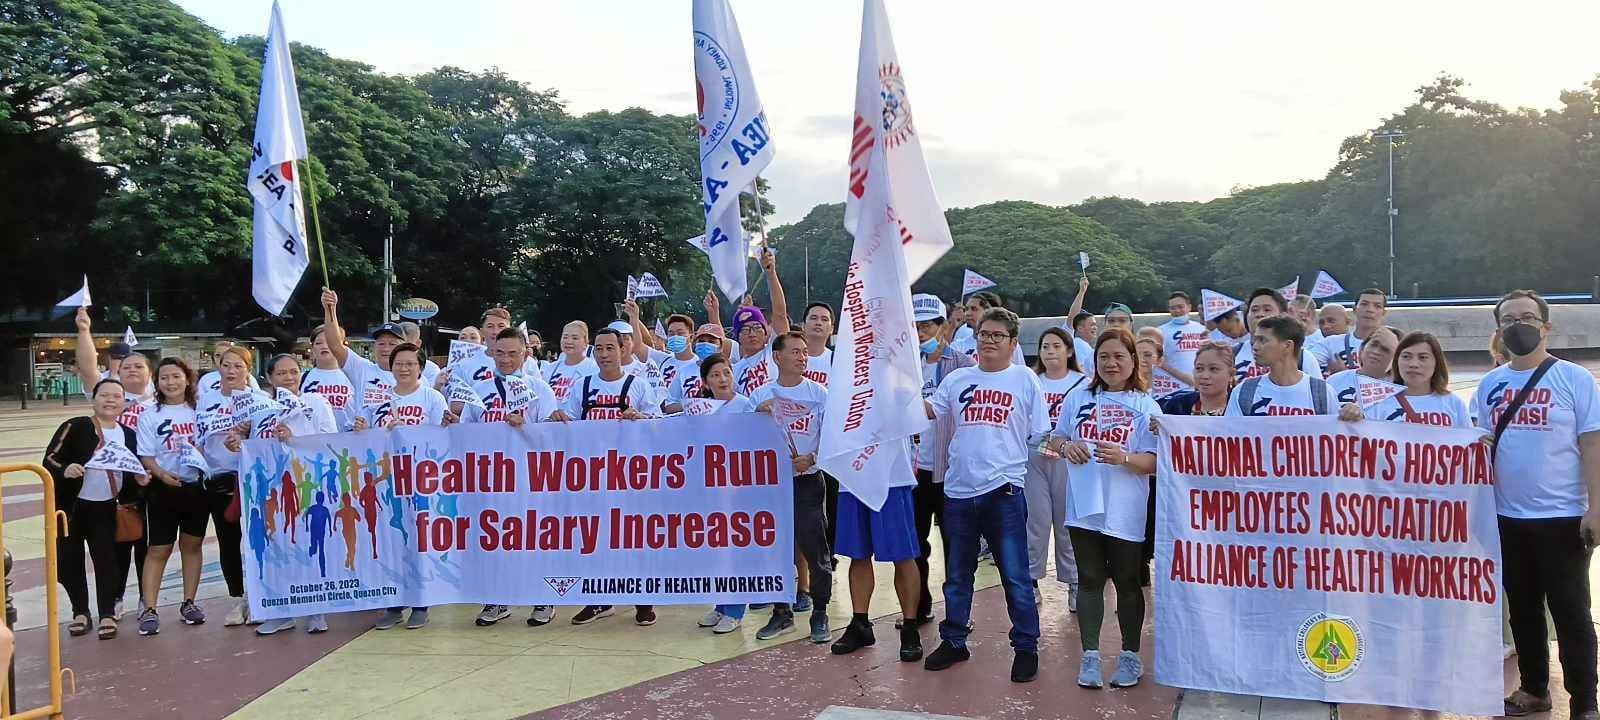 Ang Bayan Health Workers Run Inilunsad Para Sa Dagdag Sweldo 1590